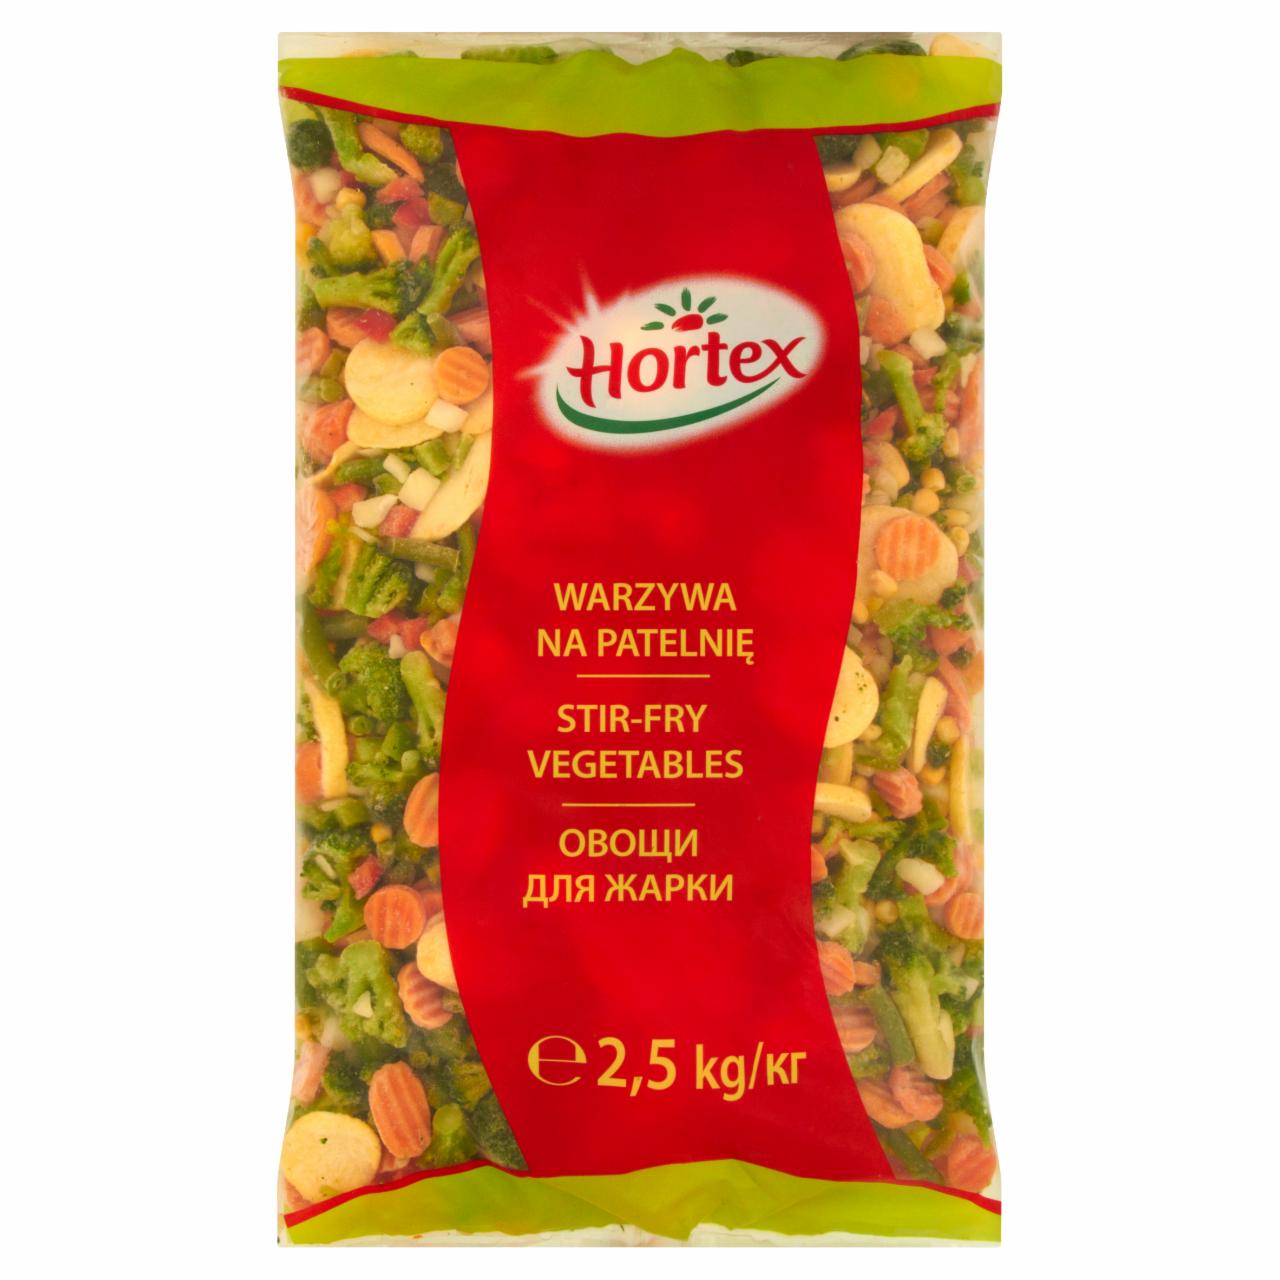 Zdjęcia - Hortex Warzywa na patelnię 2,5 kg